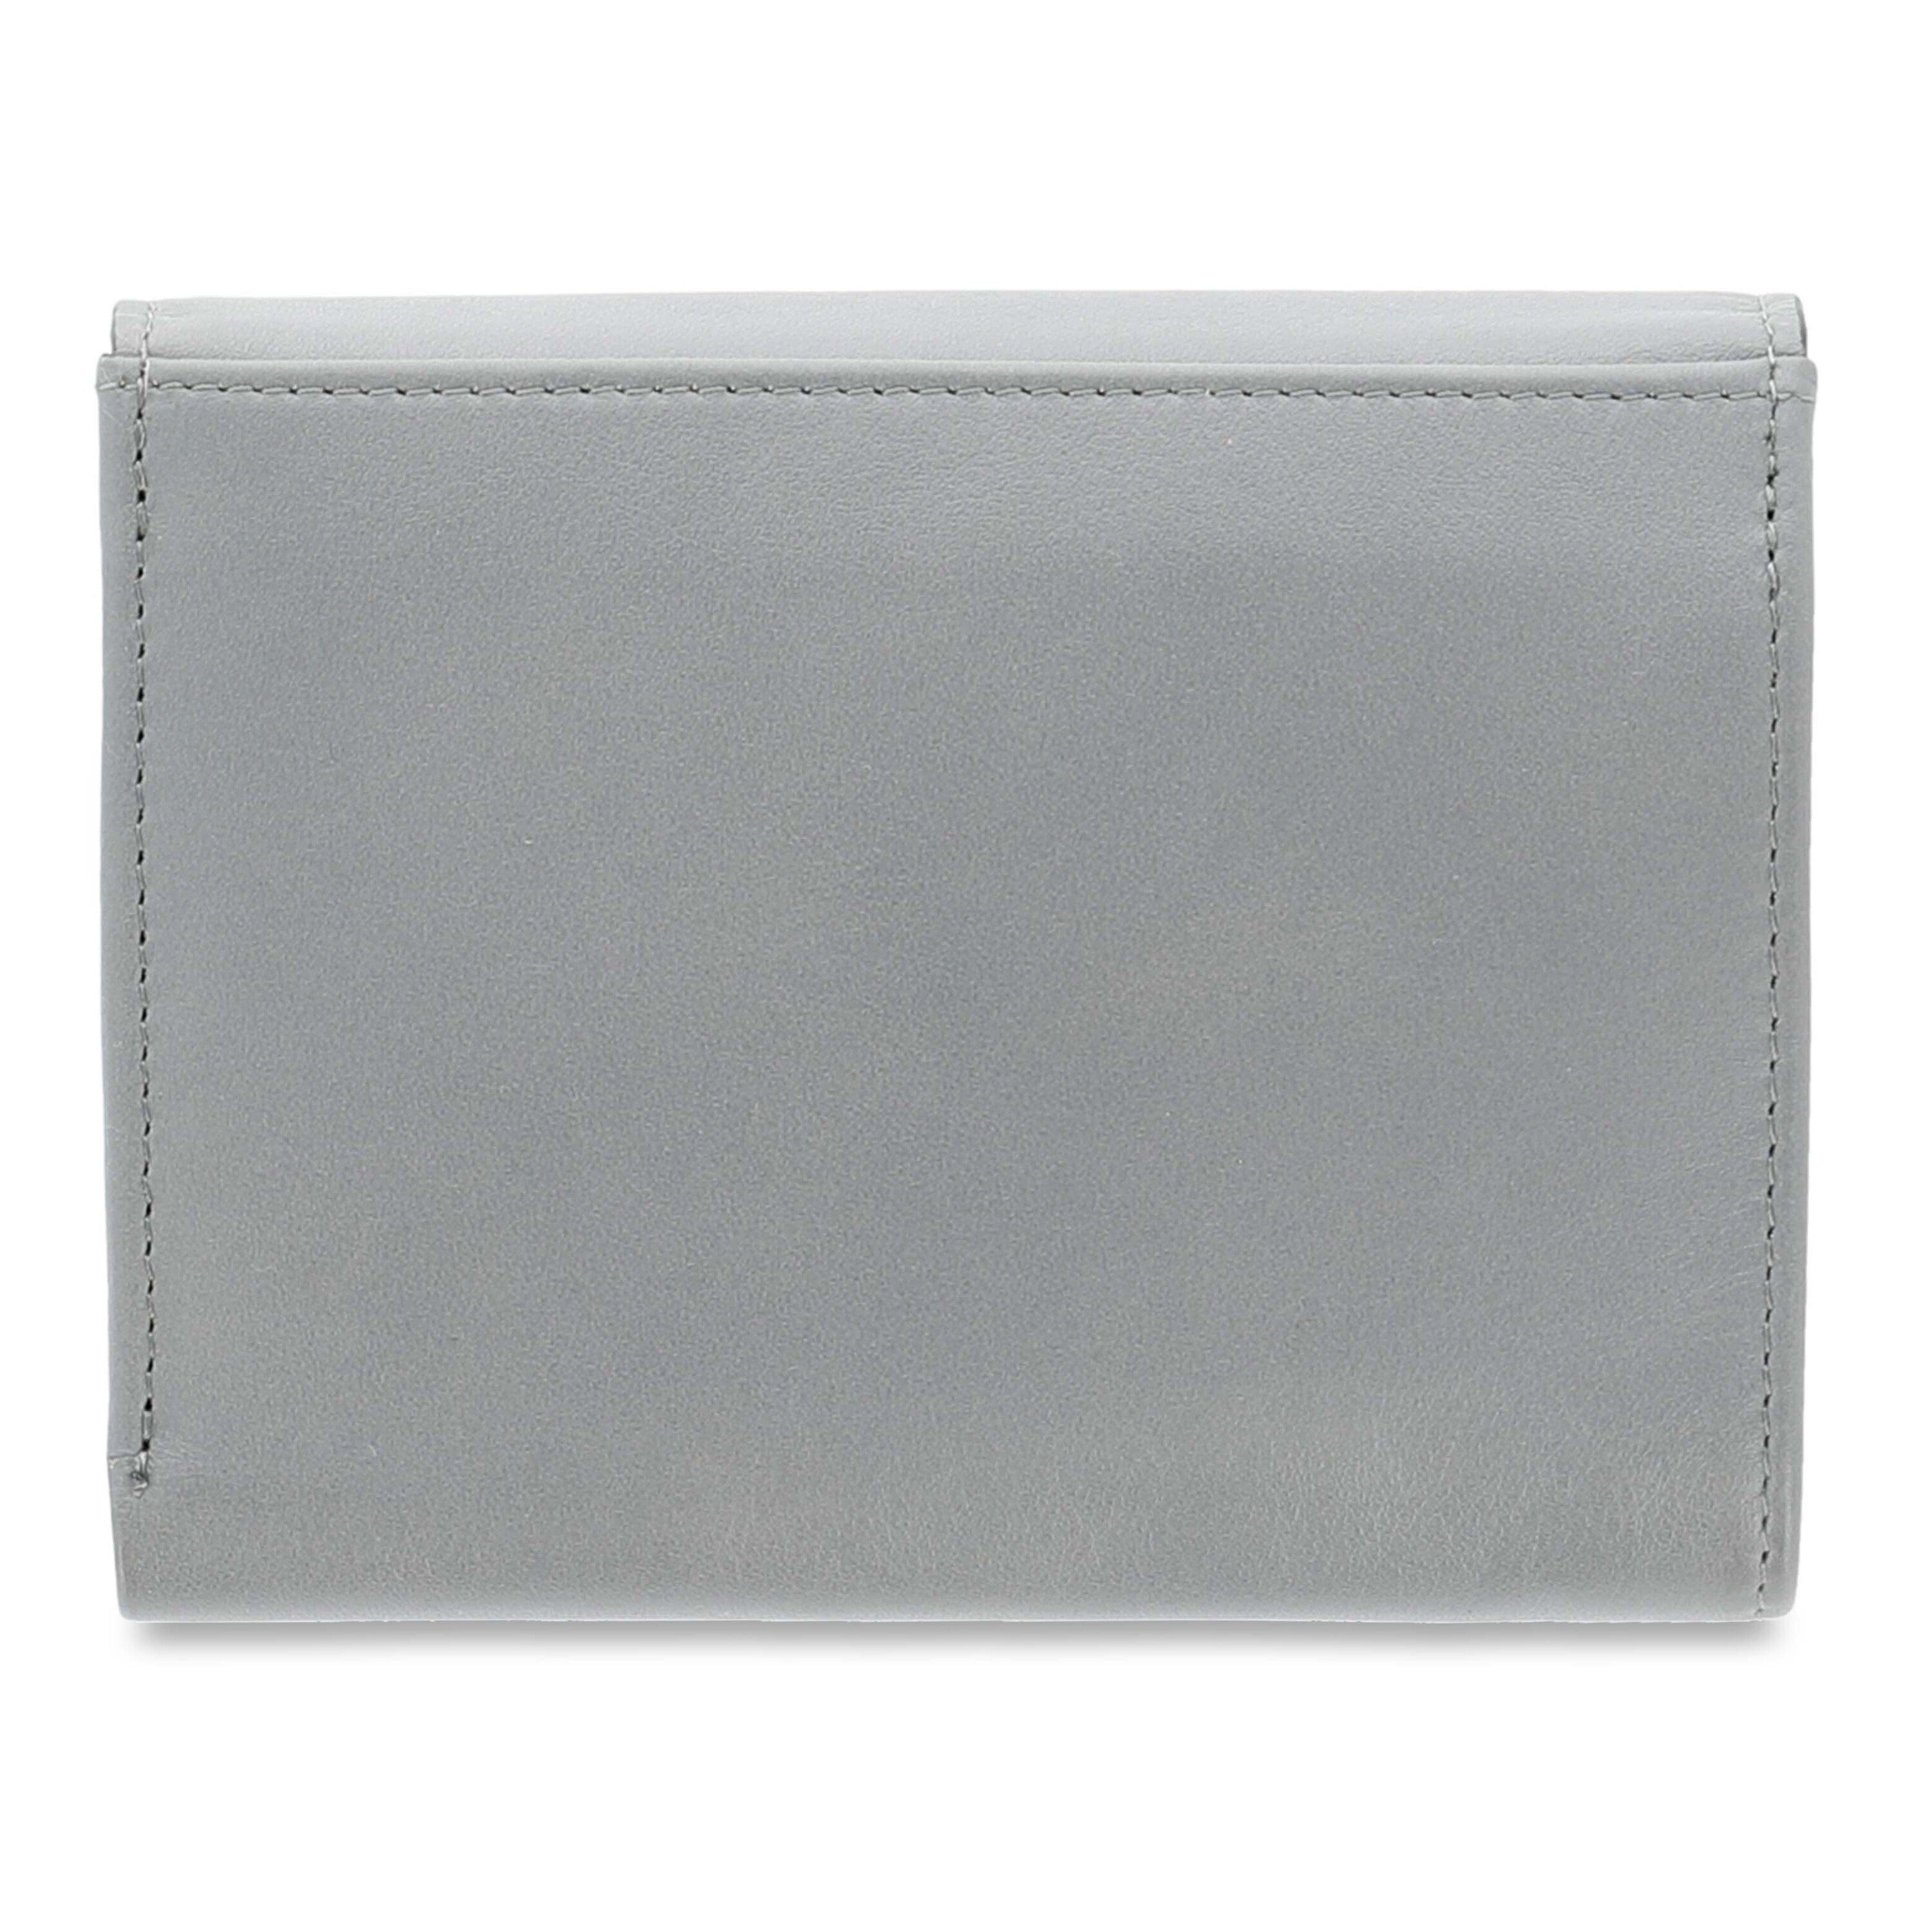 (nein) Portemonnaie Geldbörse aus Echtleder PICARD Picard Nele granite